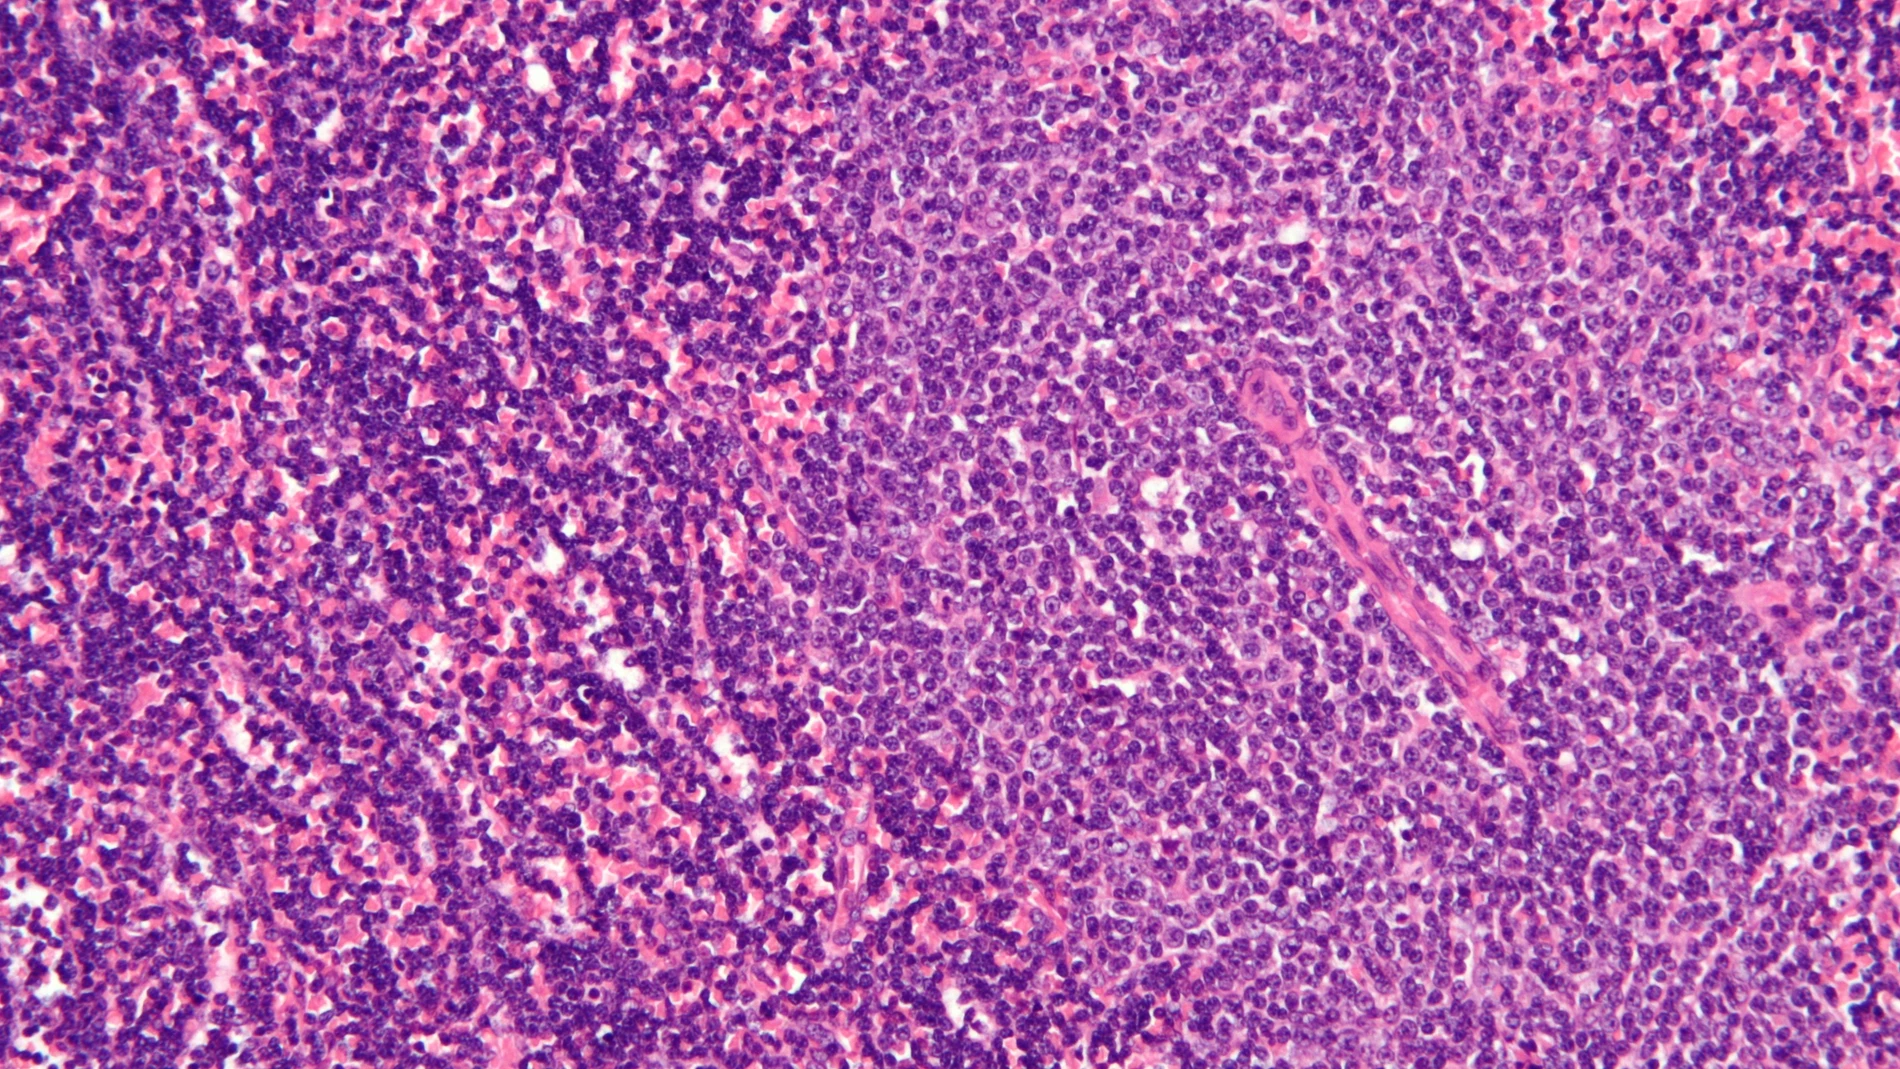 Micrografía de un nodo linfático afectado por leucemia linfocítica crónica